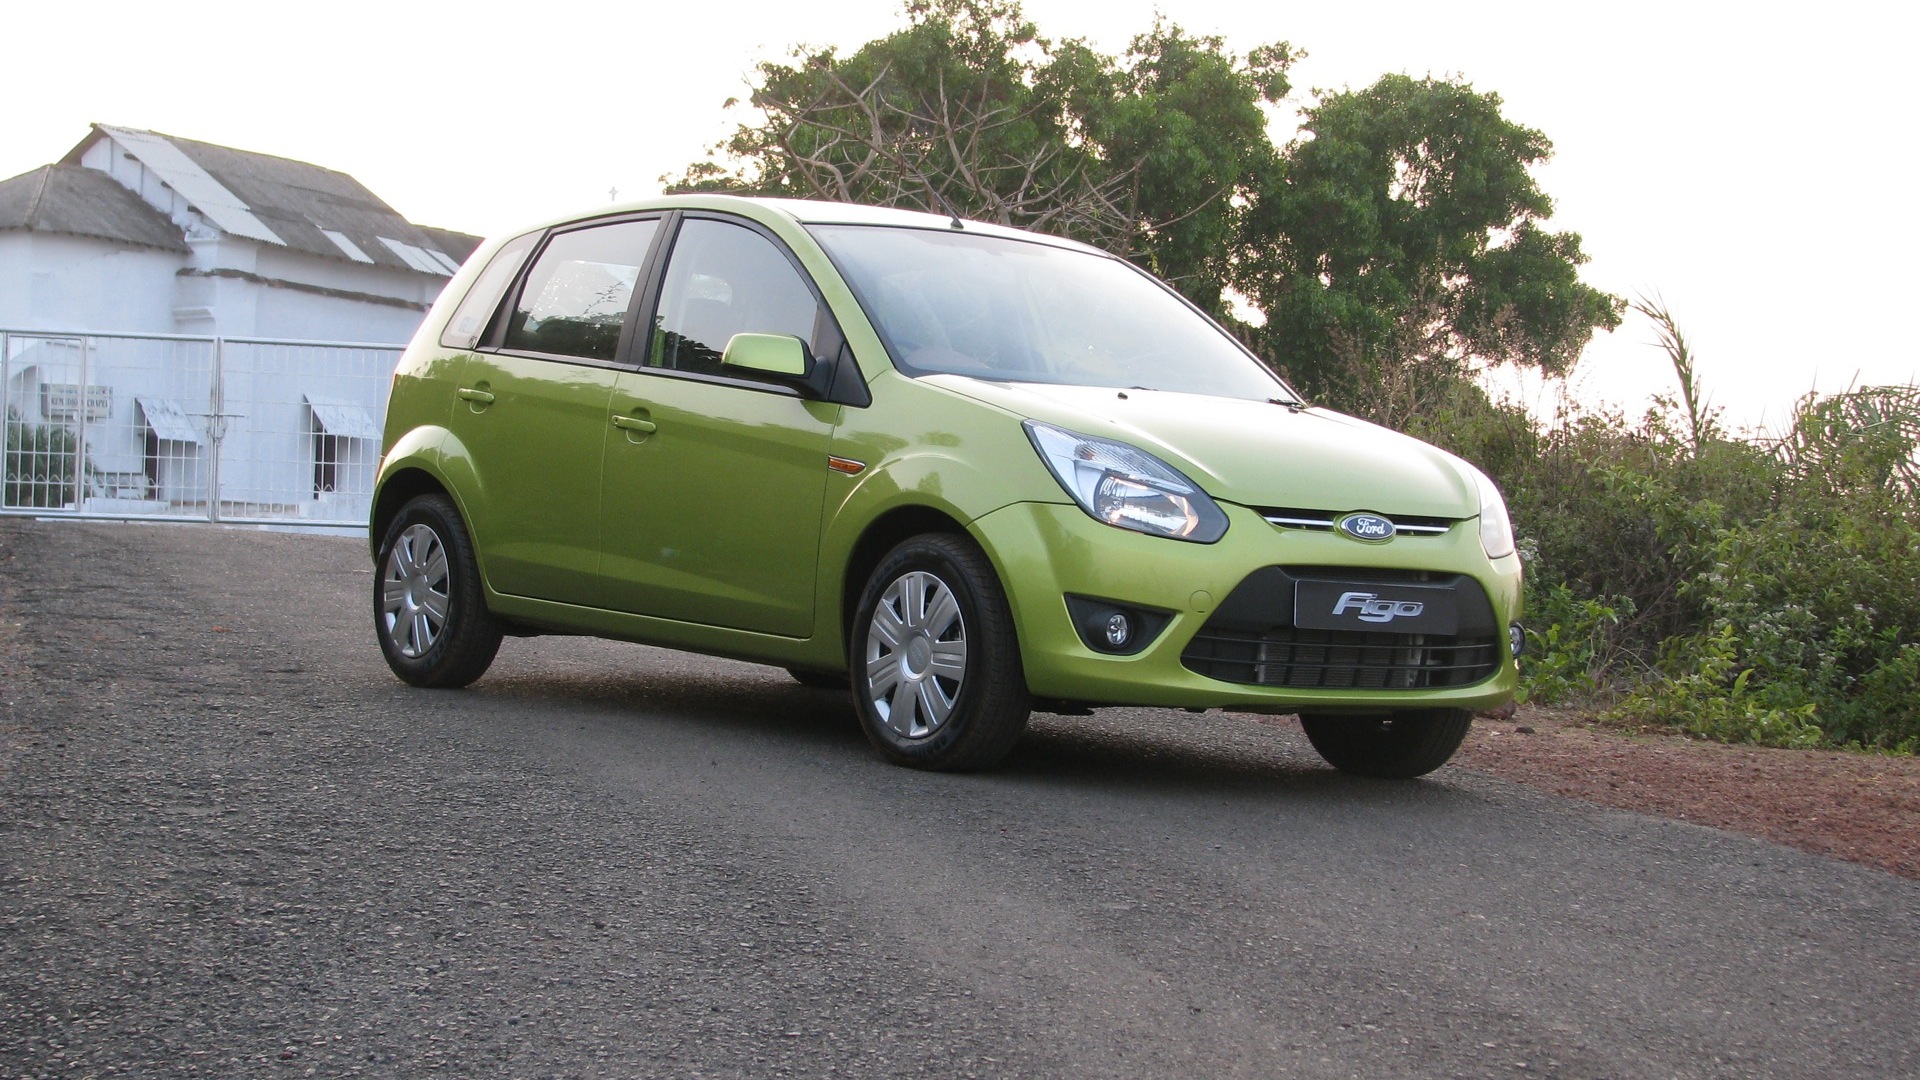 Ford-Figo-2013-1-2-Duratec-LXI-Compare